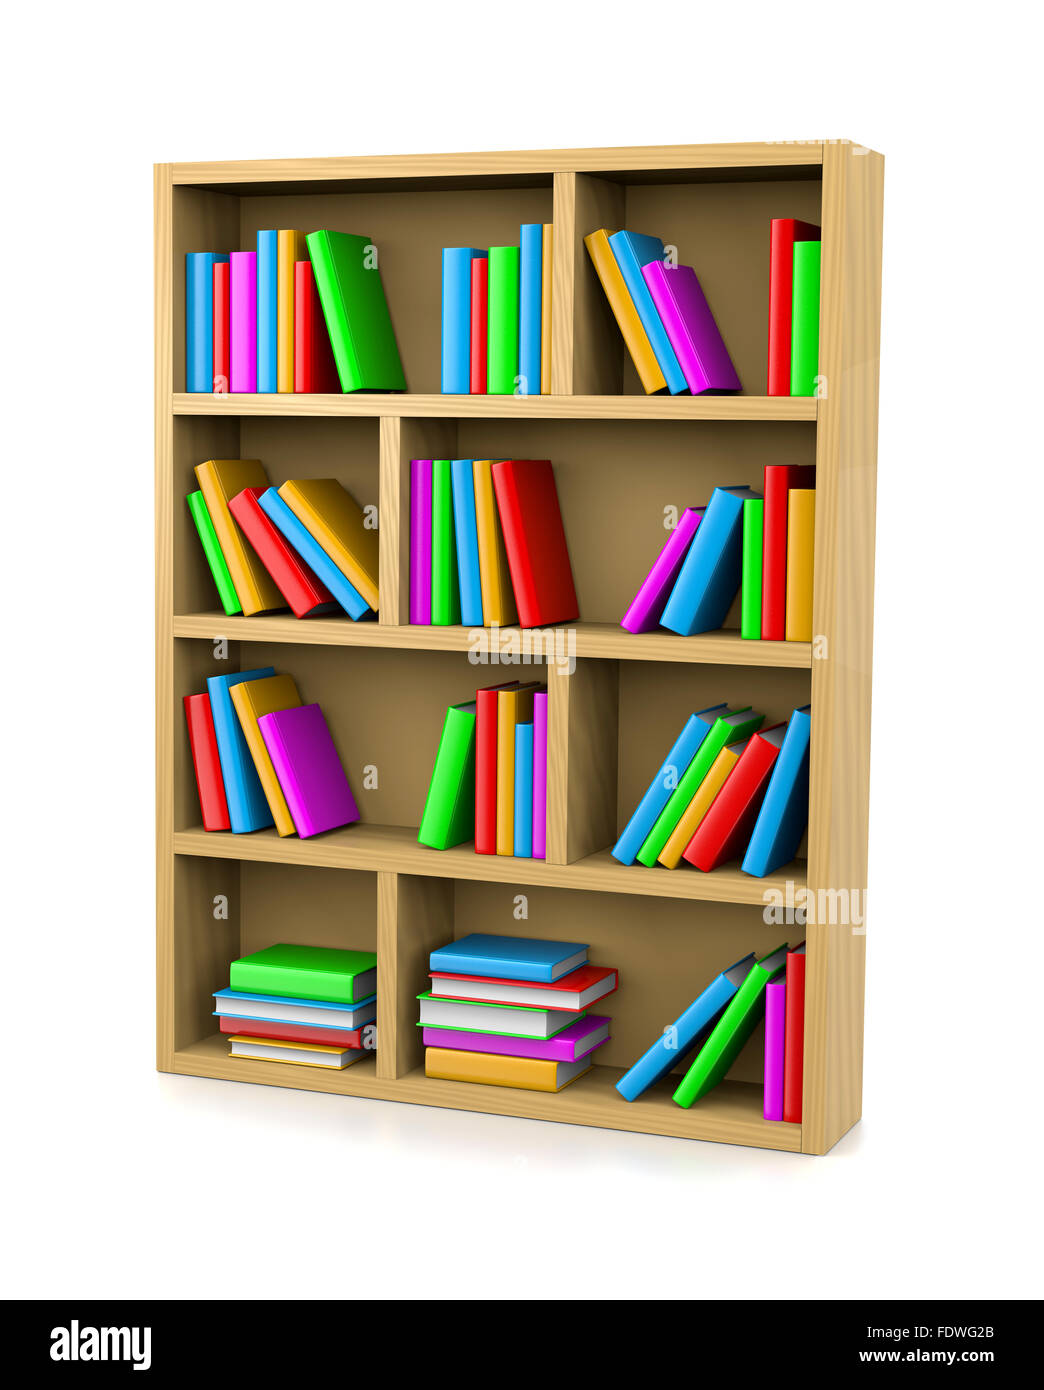 Wooden Bookshelf on White Background 3D Illustration Stock Photo